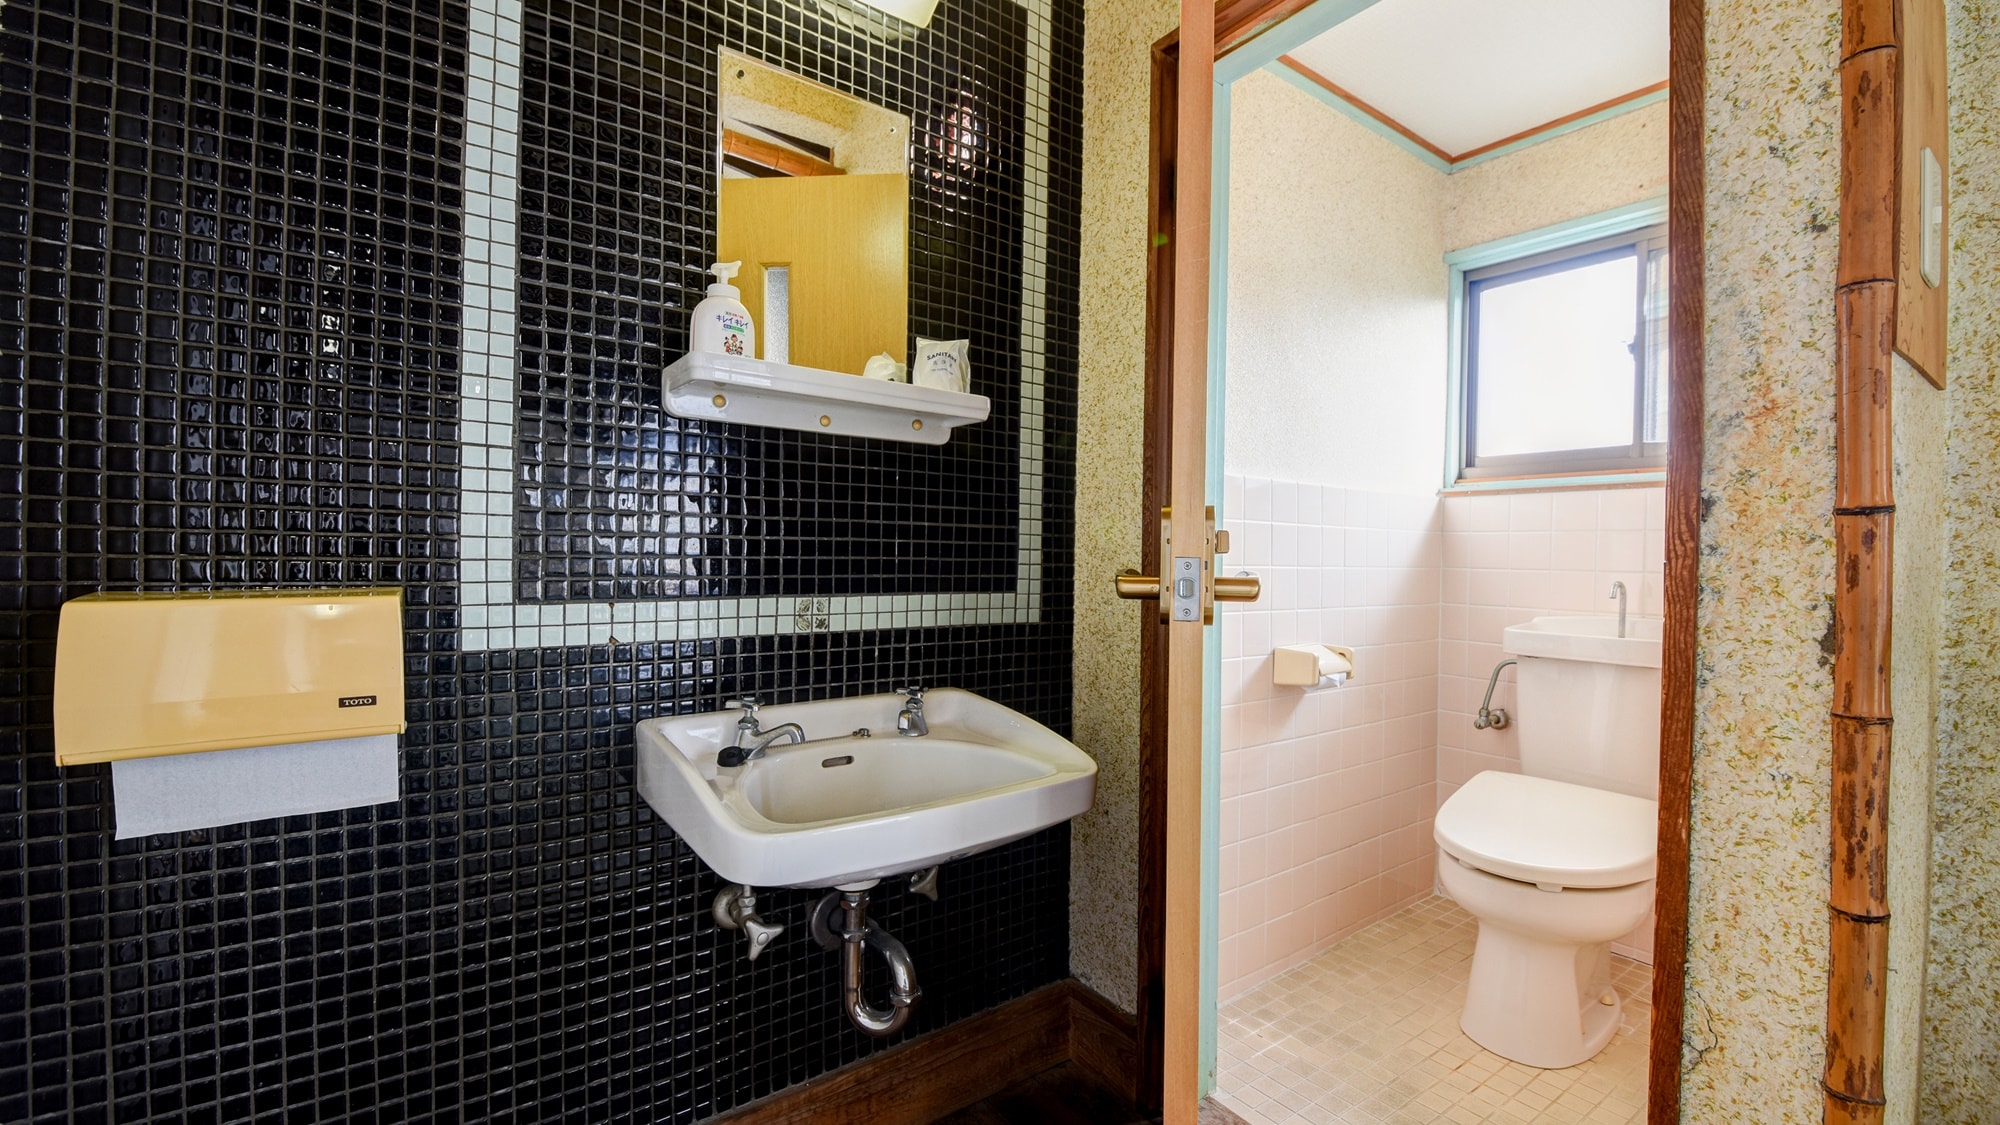 * [團體日式房間-洗手間-]為避免不便，每個房間都配備了衛生間。